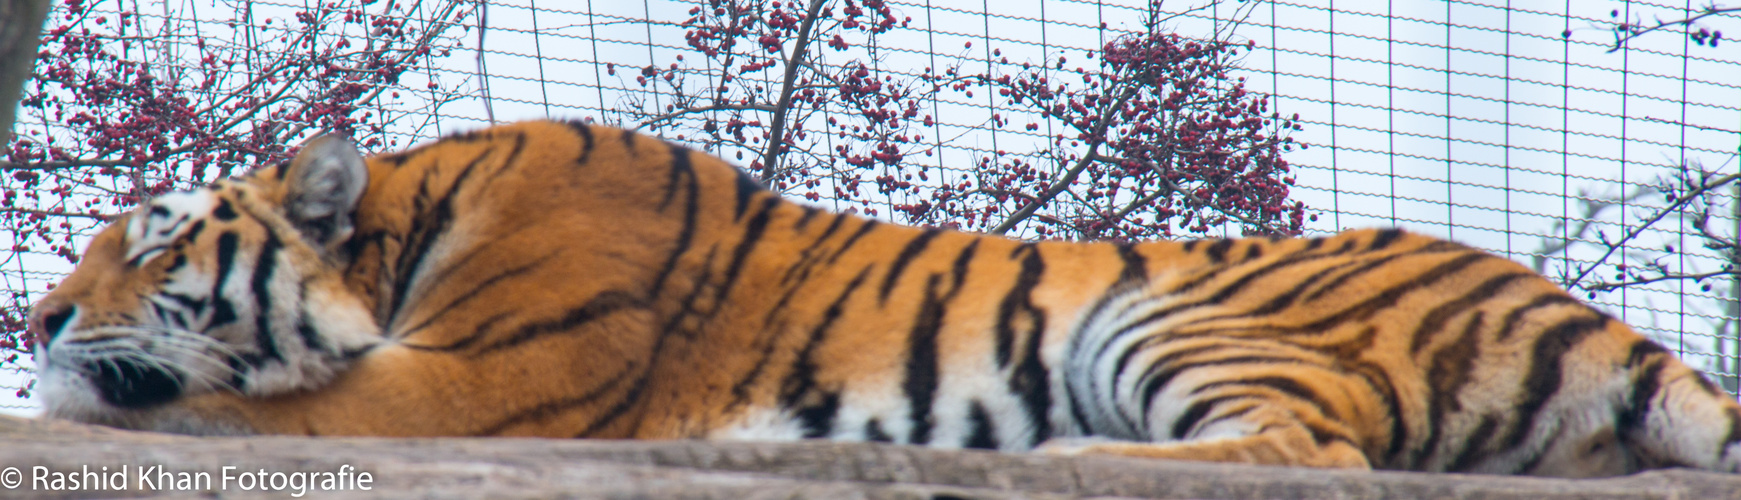 Der Tiger in Schönbrunn ist immer so faul gg